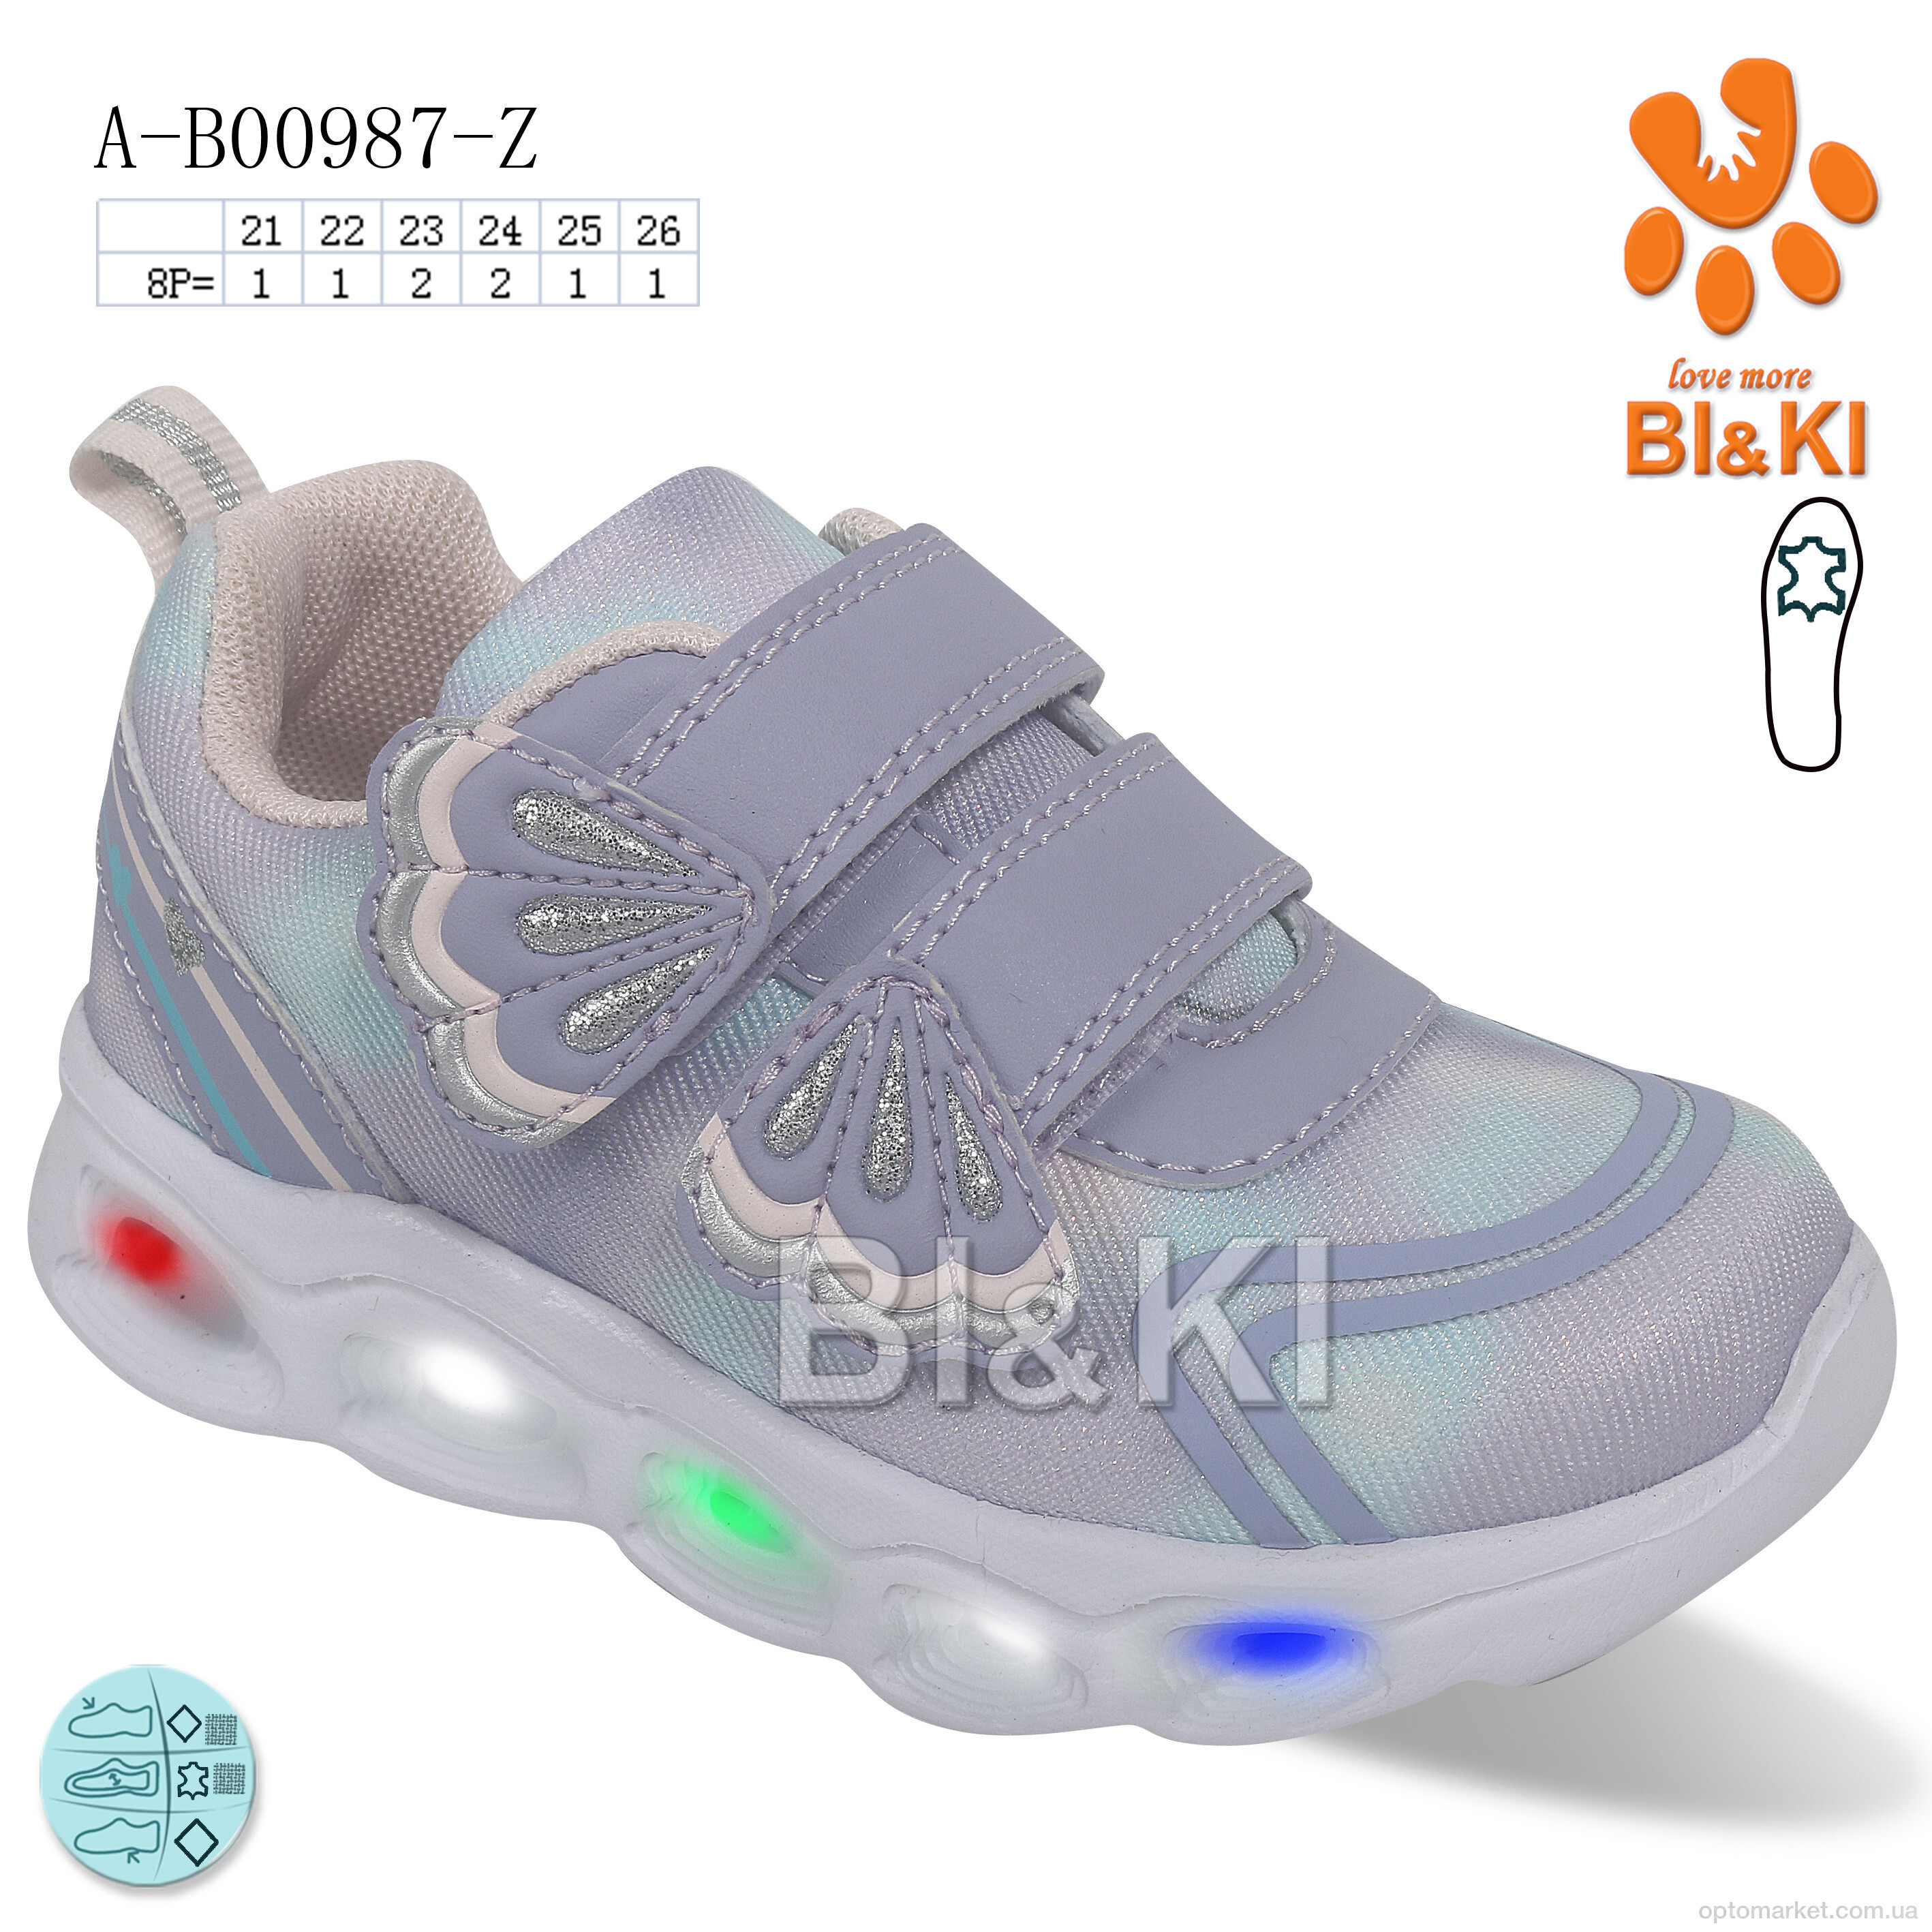 Купить Кросівки дитячі A-B00987-Z LED Bi&Ki фіолетовий, фото 1